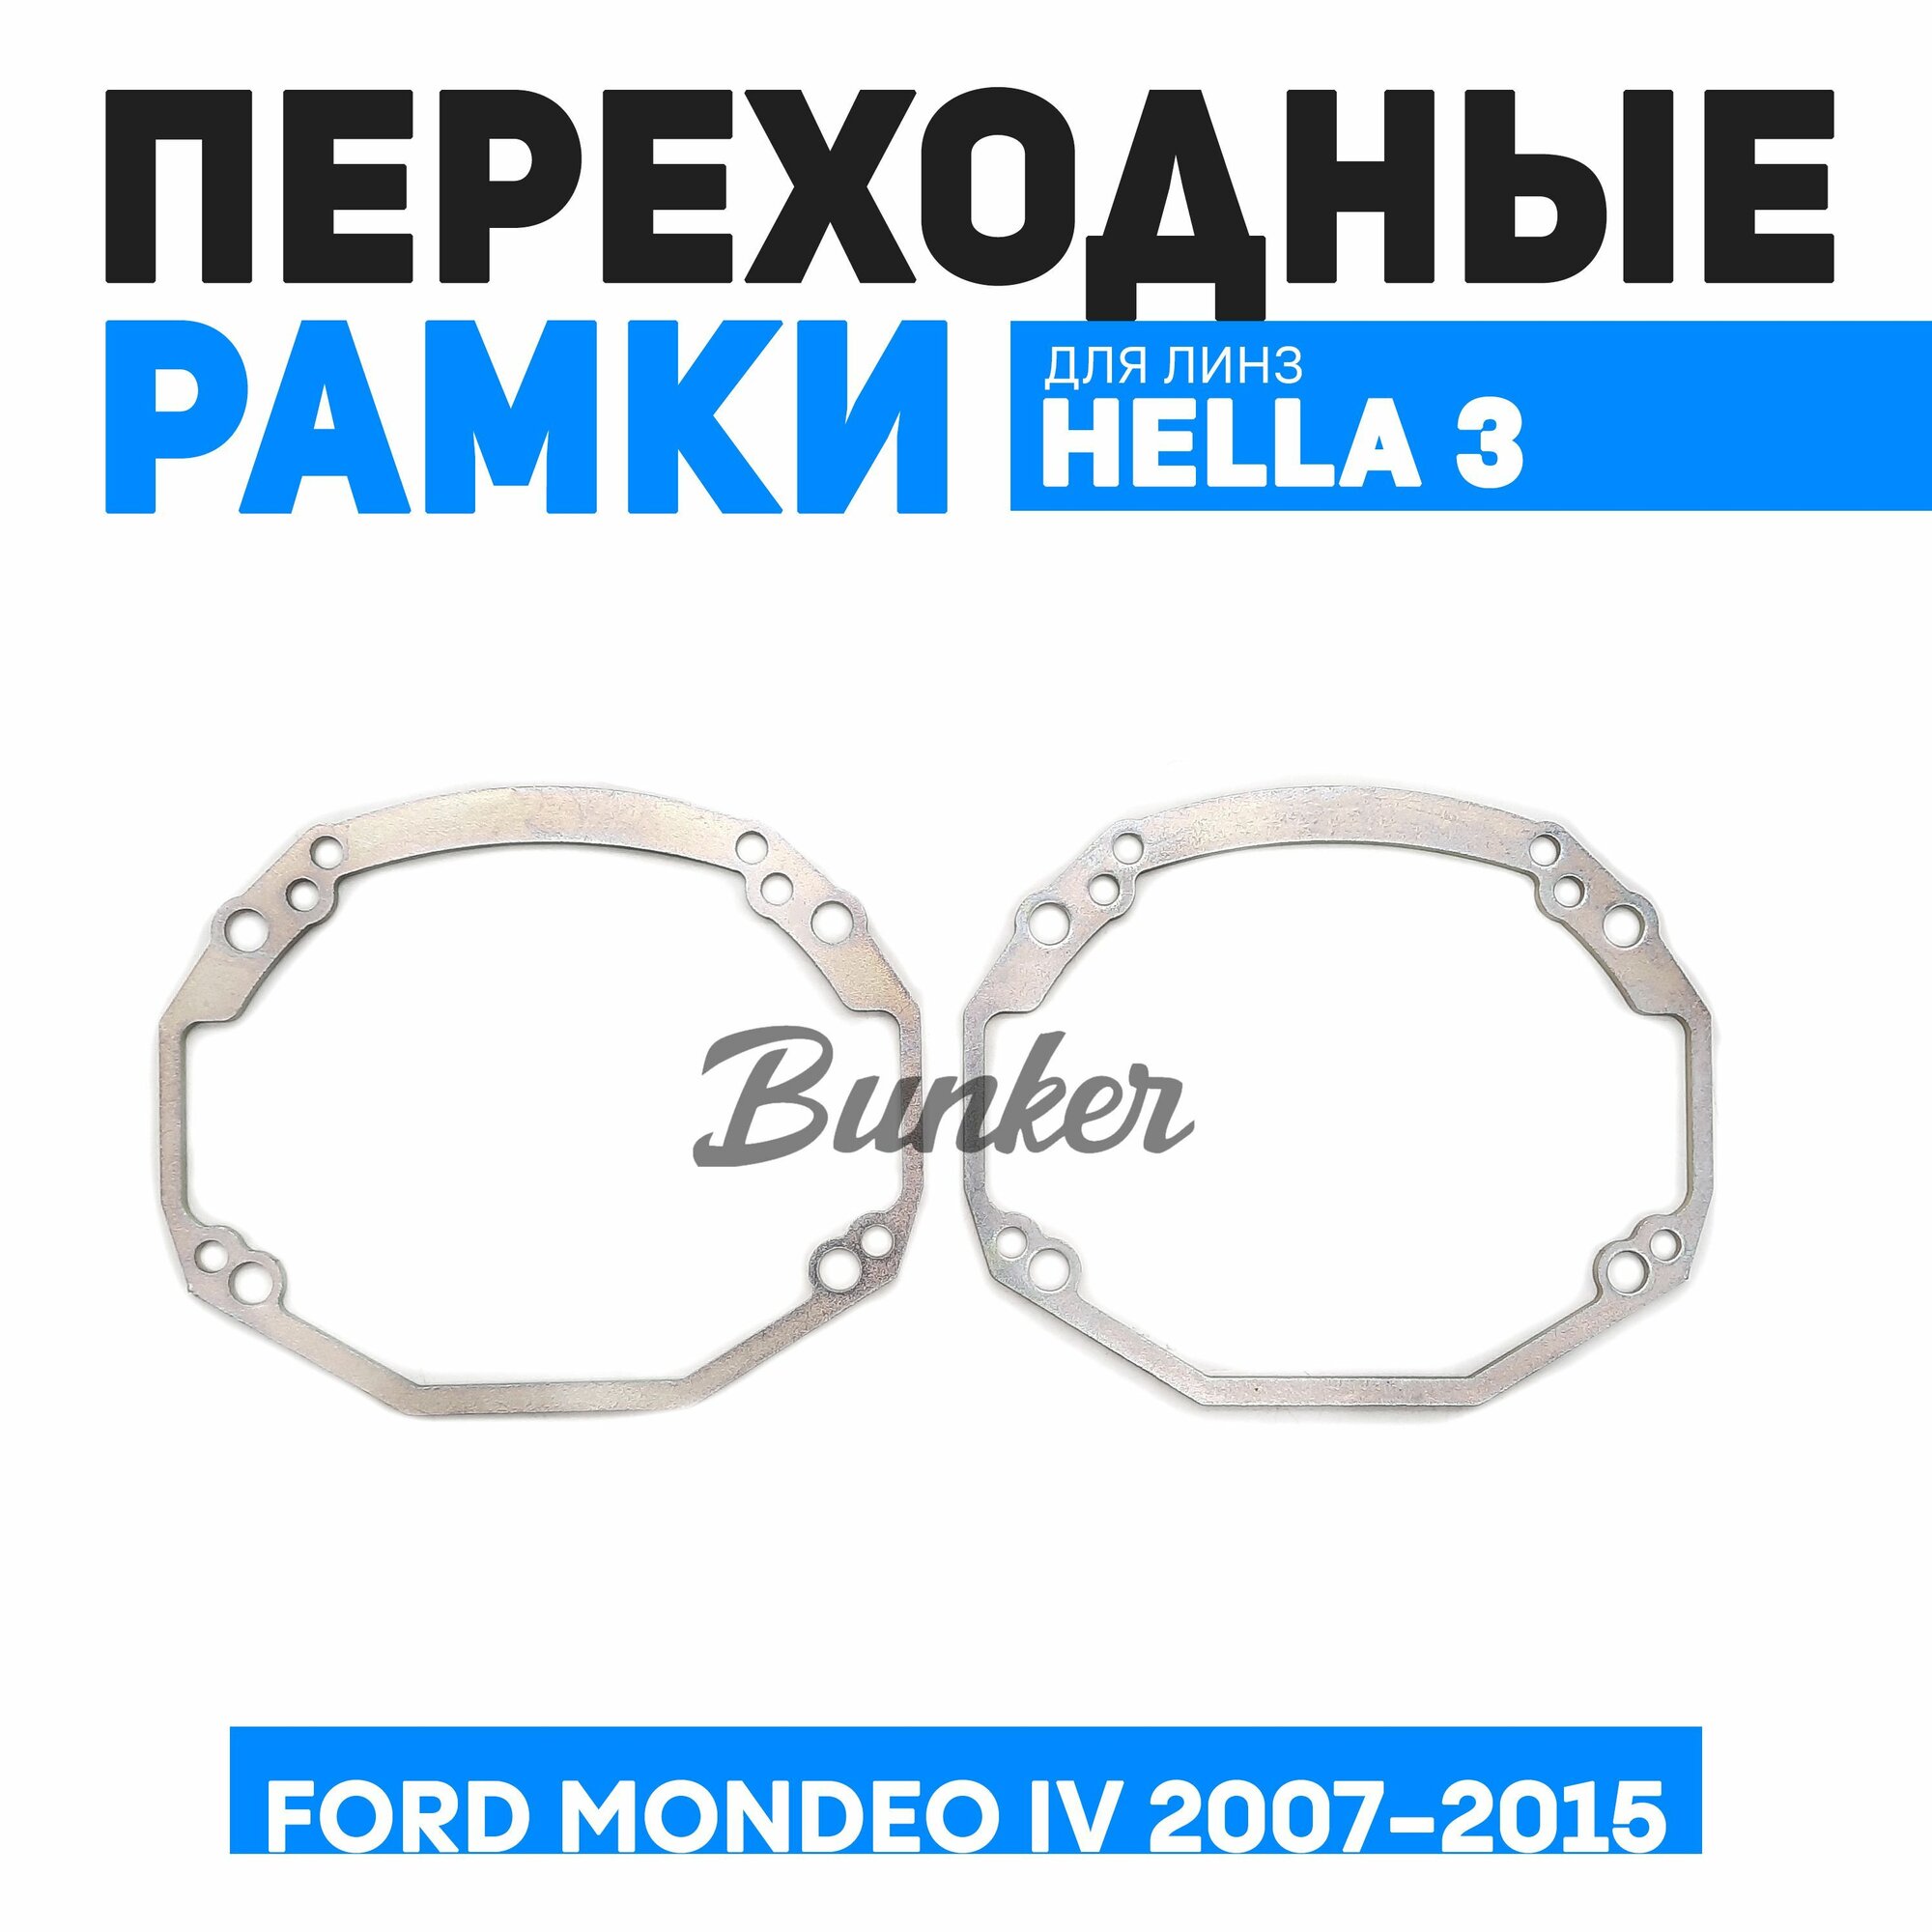 Переходные рамки для замены линз Ford Mondeo IV 2007-2015